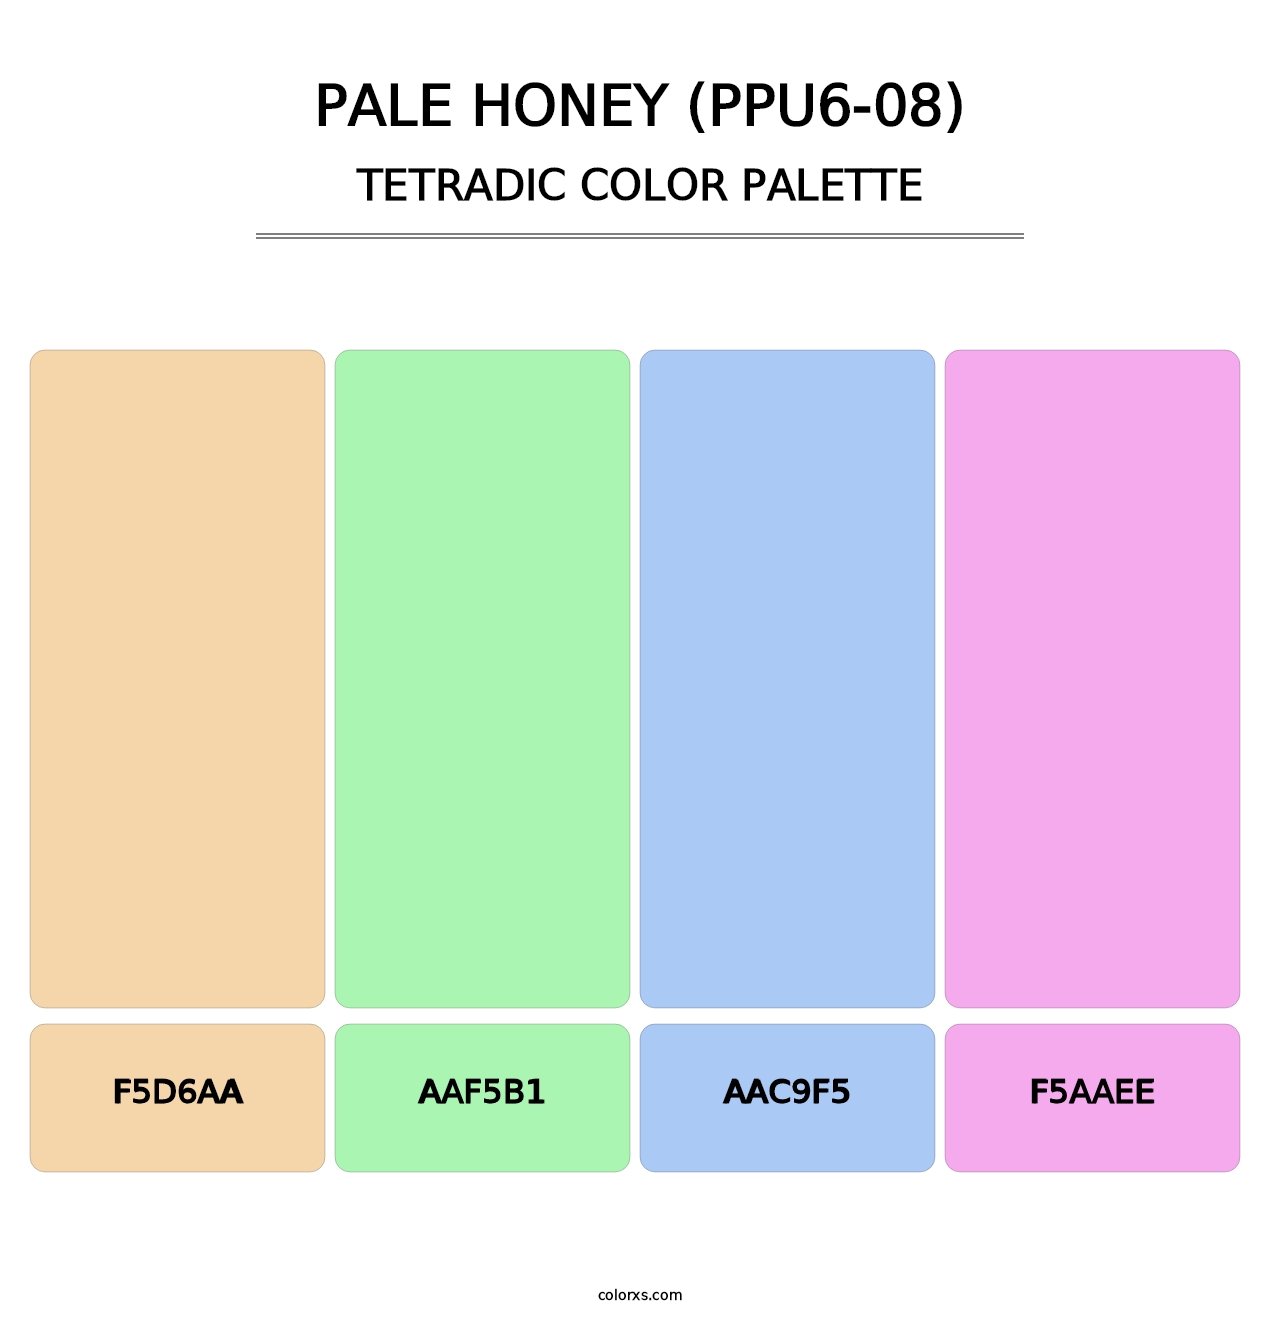 Pale Honey (PPU6-08) - Tetradic Color Palette